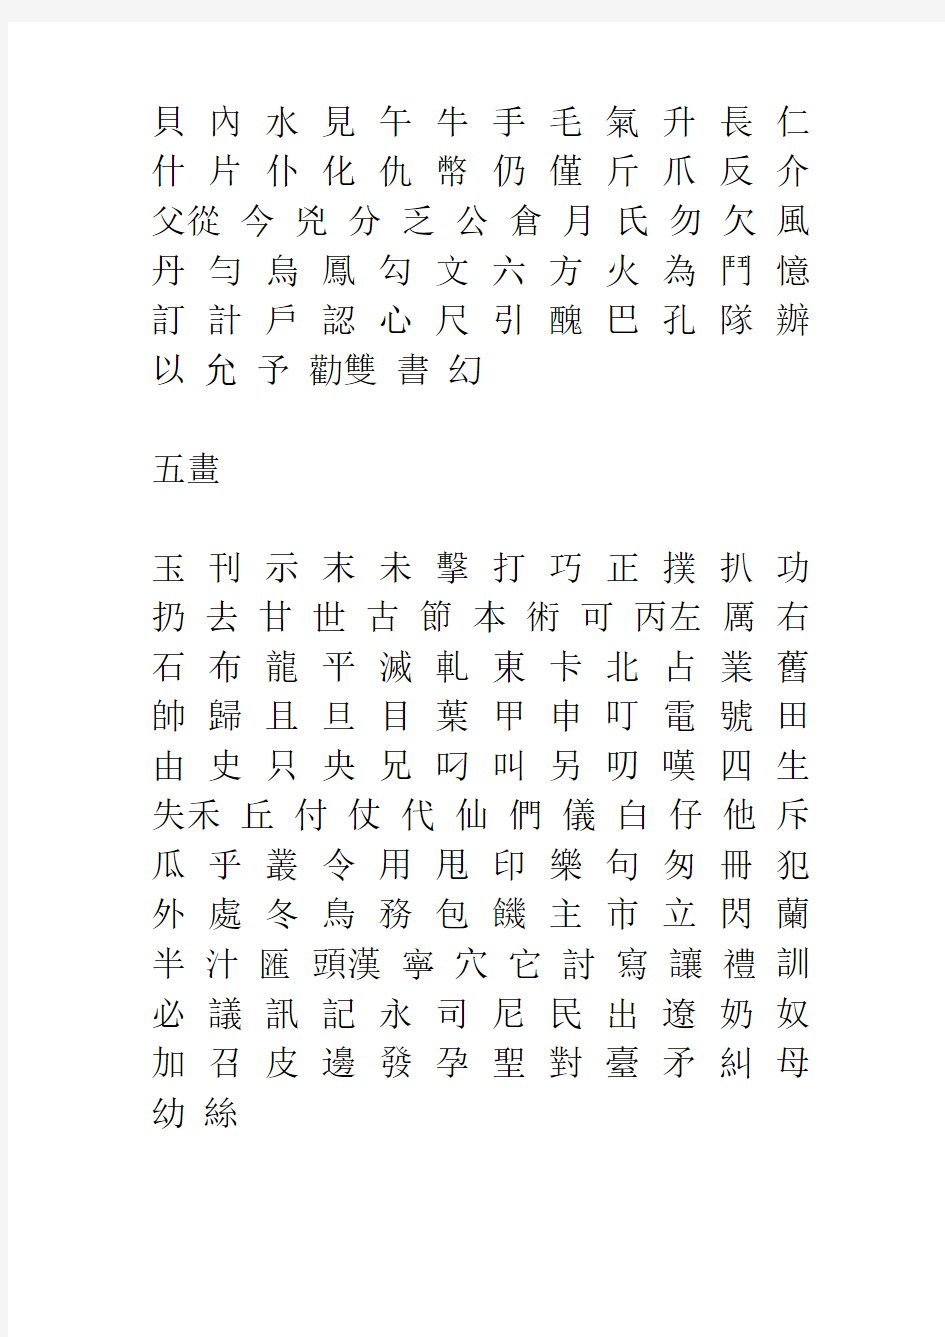 3500个常用汉字及繁体字表格